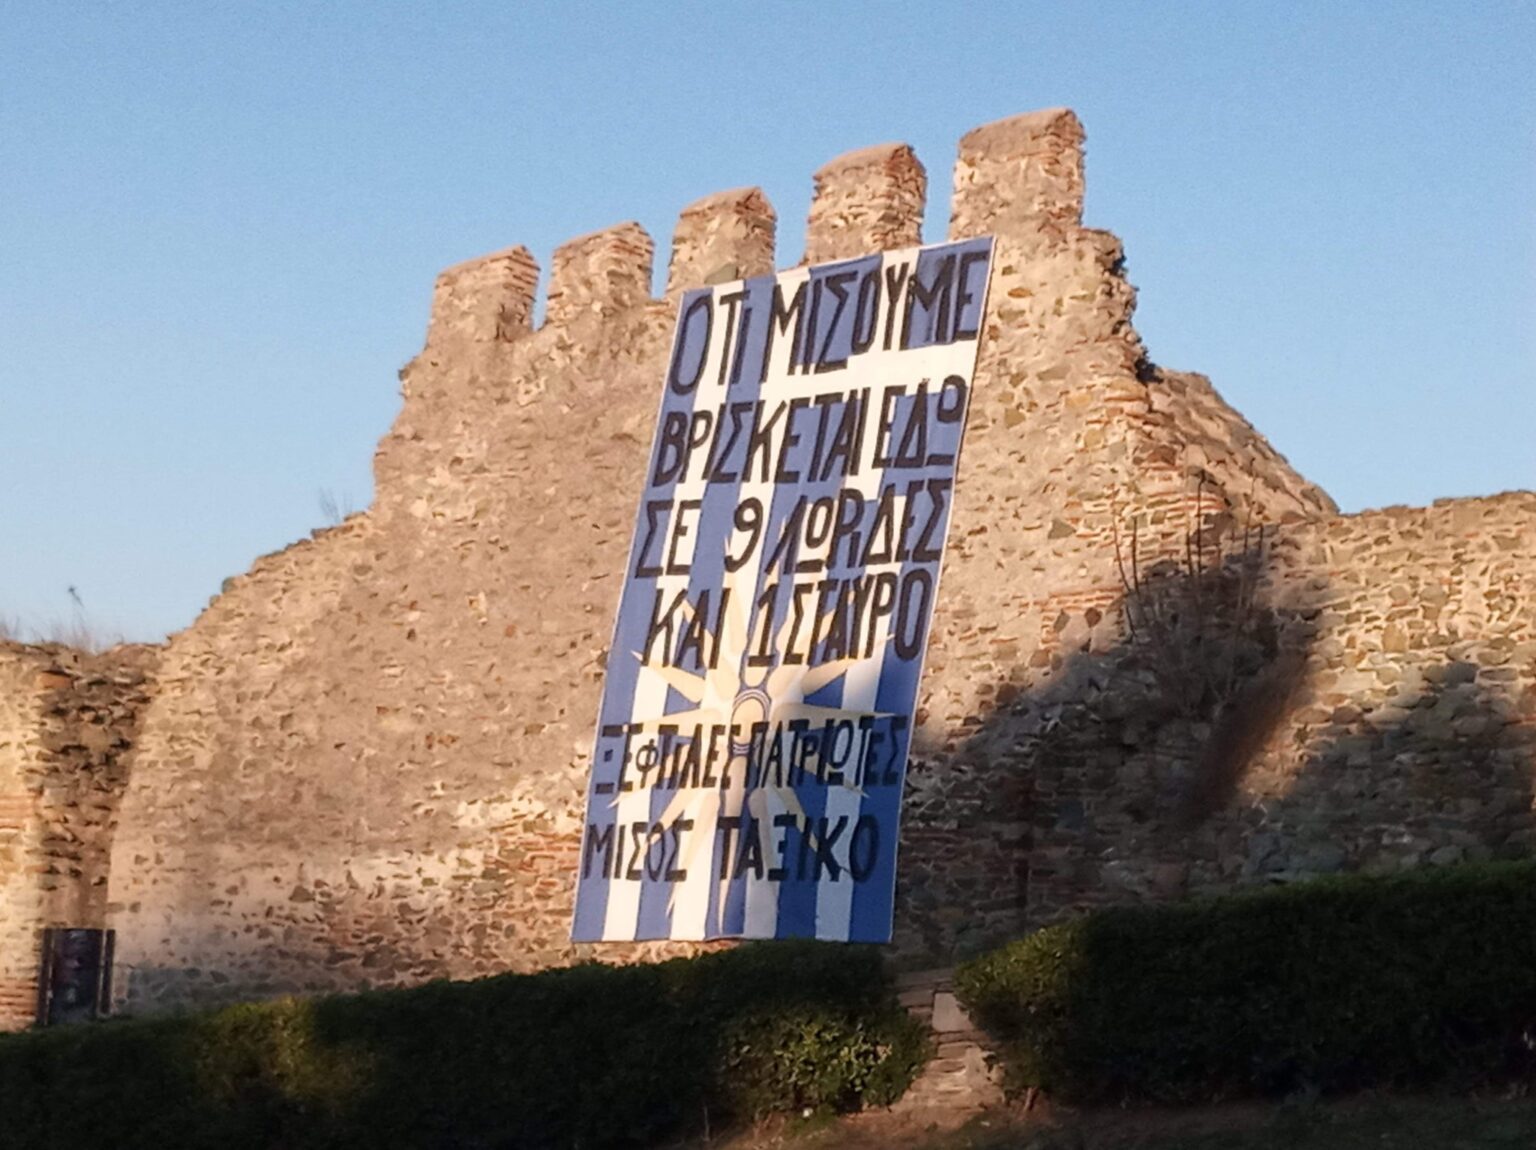 Πανό αίσχος στη Θεσσαλονίκη: «Ότι μισούμε βρίσκεται εδώ σε 9 λωρίδες και 1 σταυρό»